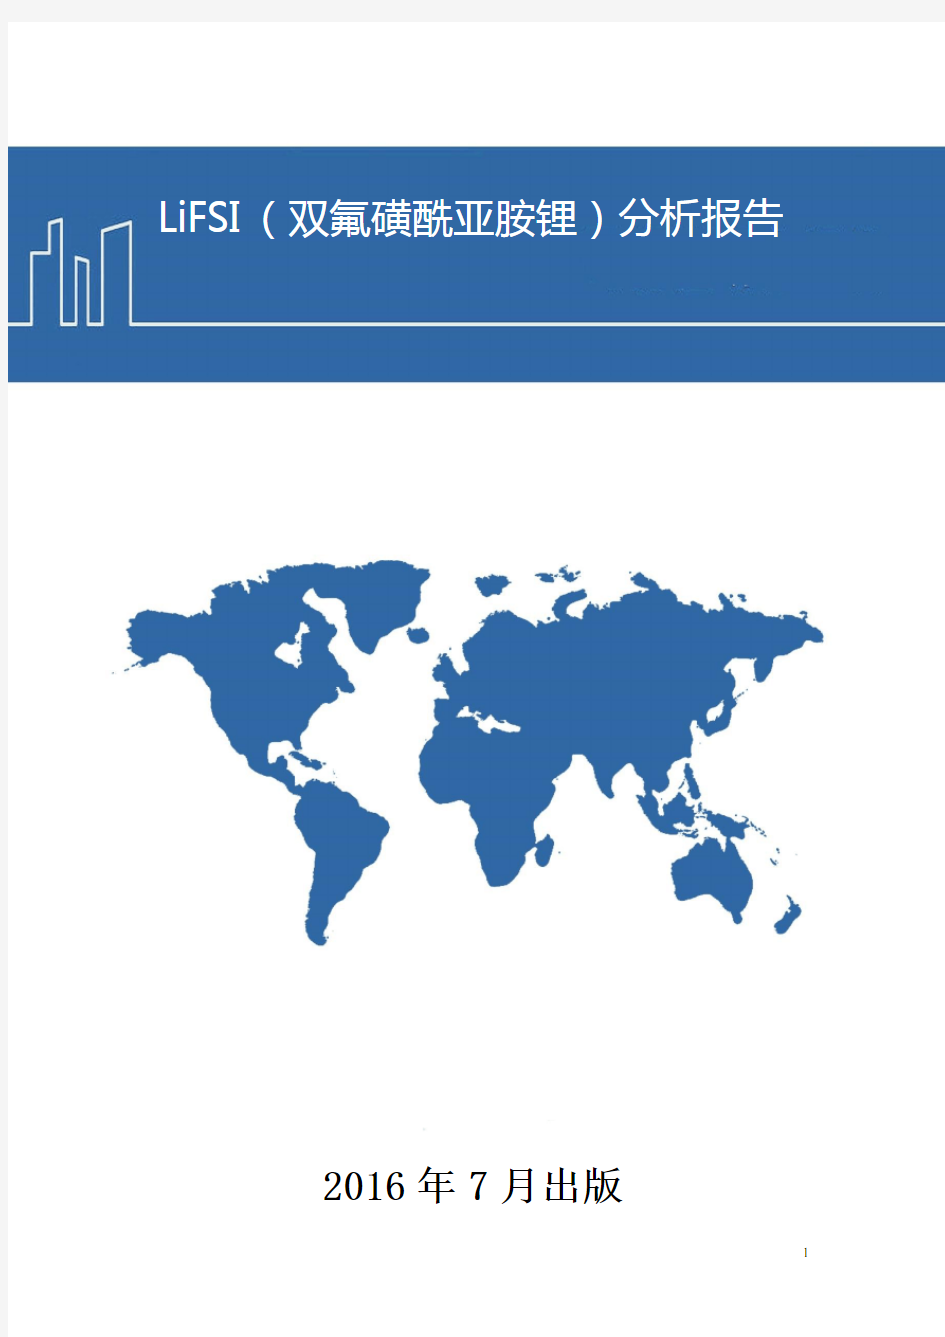 LiFSI(双氟磺酰亚胺锂)分析报告